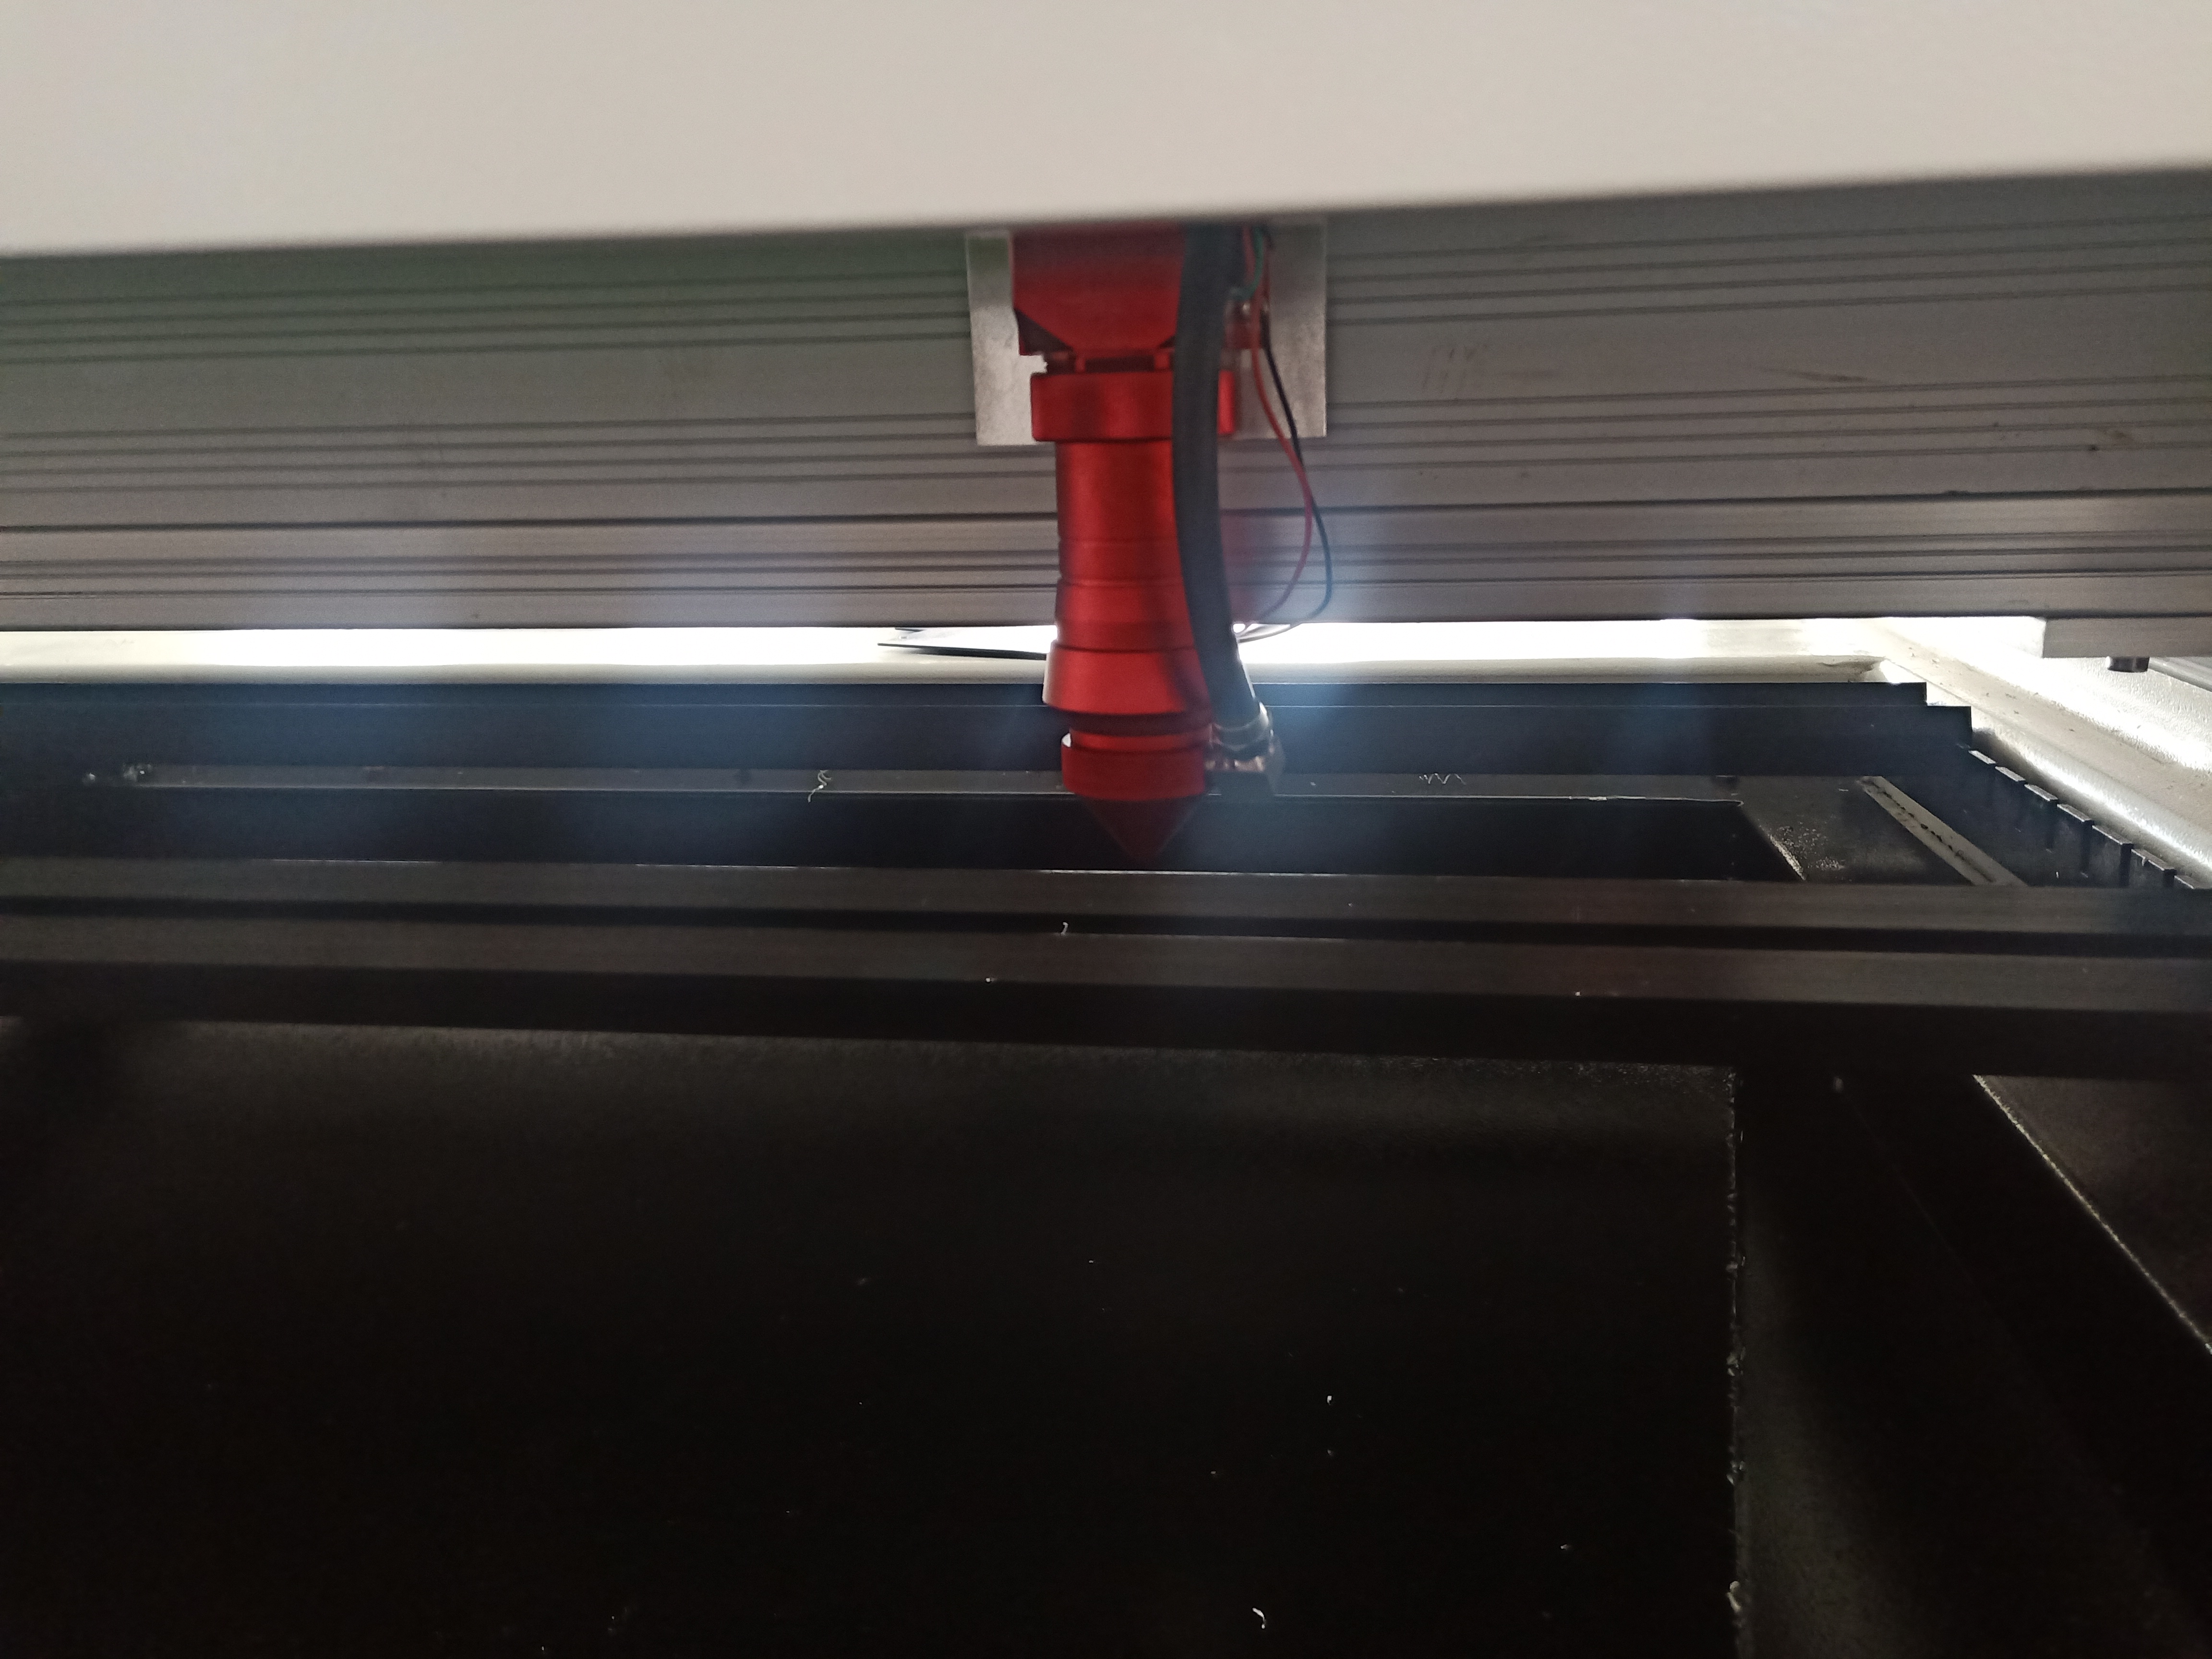 Pemasok Pabrik Co2 Laser Engraving Mesin Pemotong SCU1325